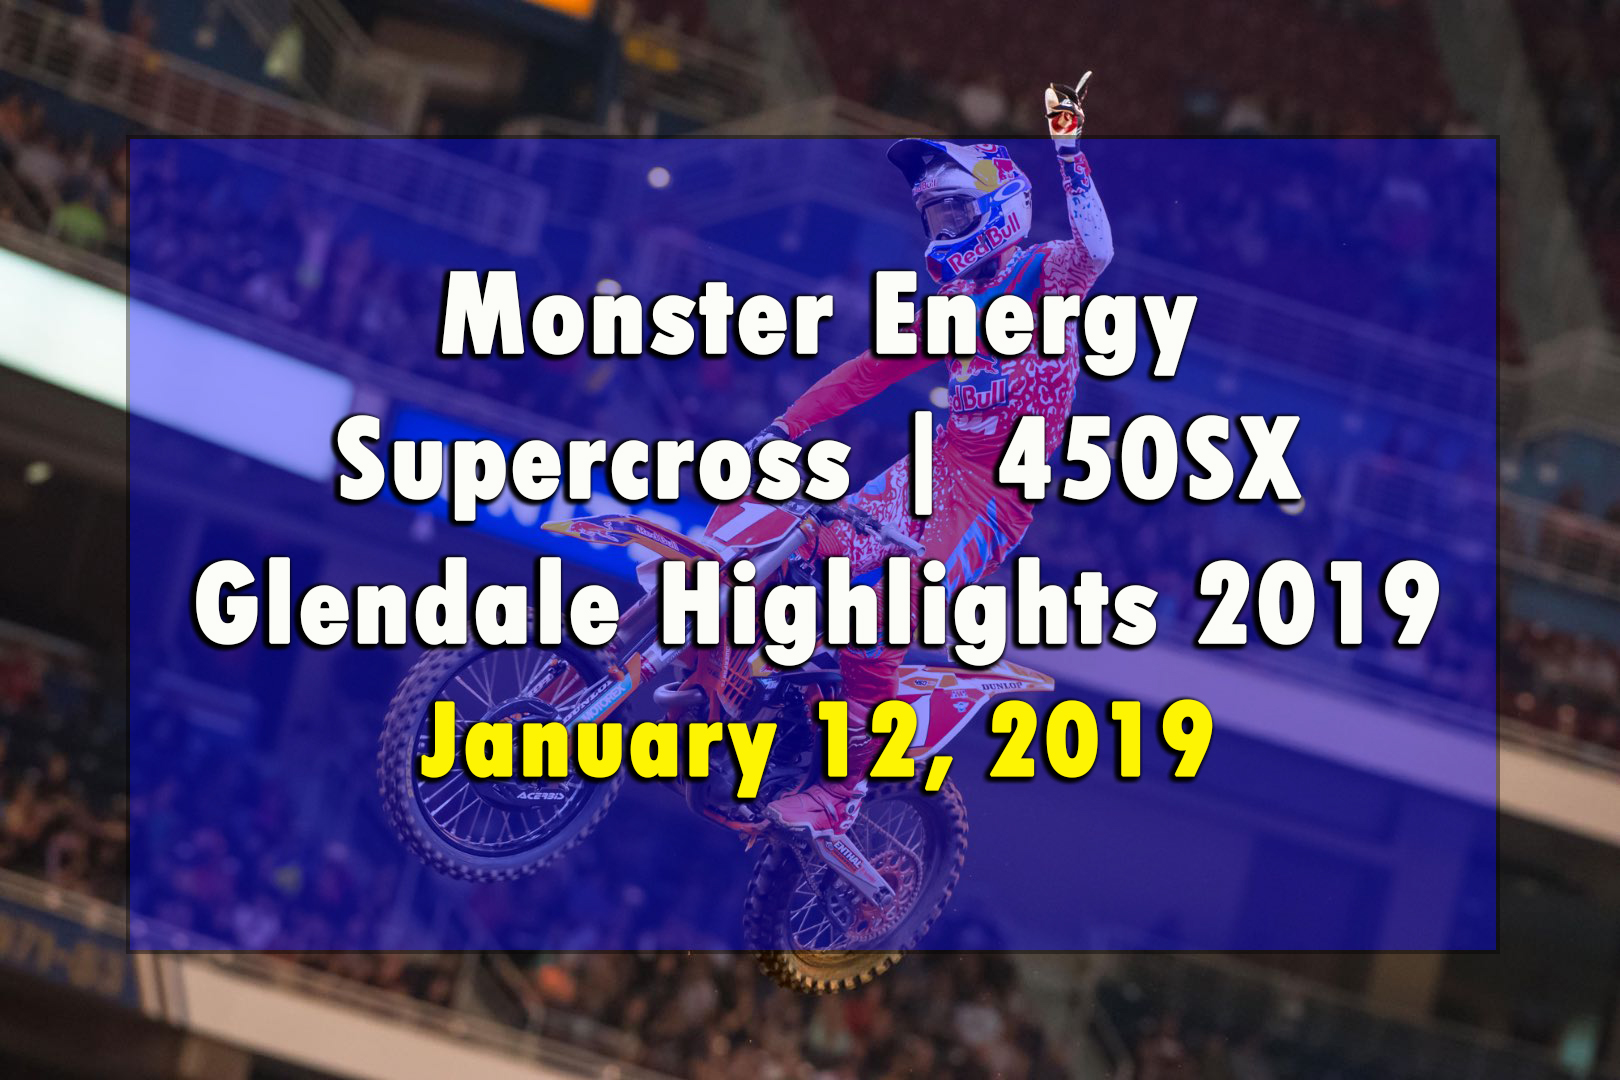 Monster Energy Supercross 450SX Glendale Highlights 2019